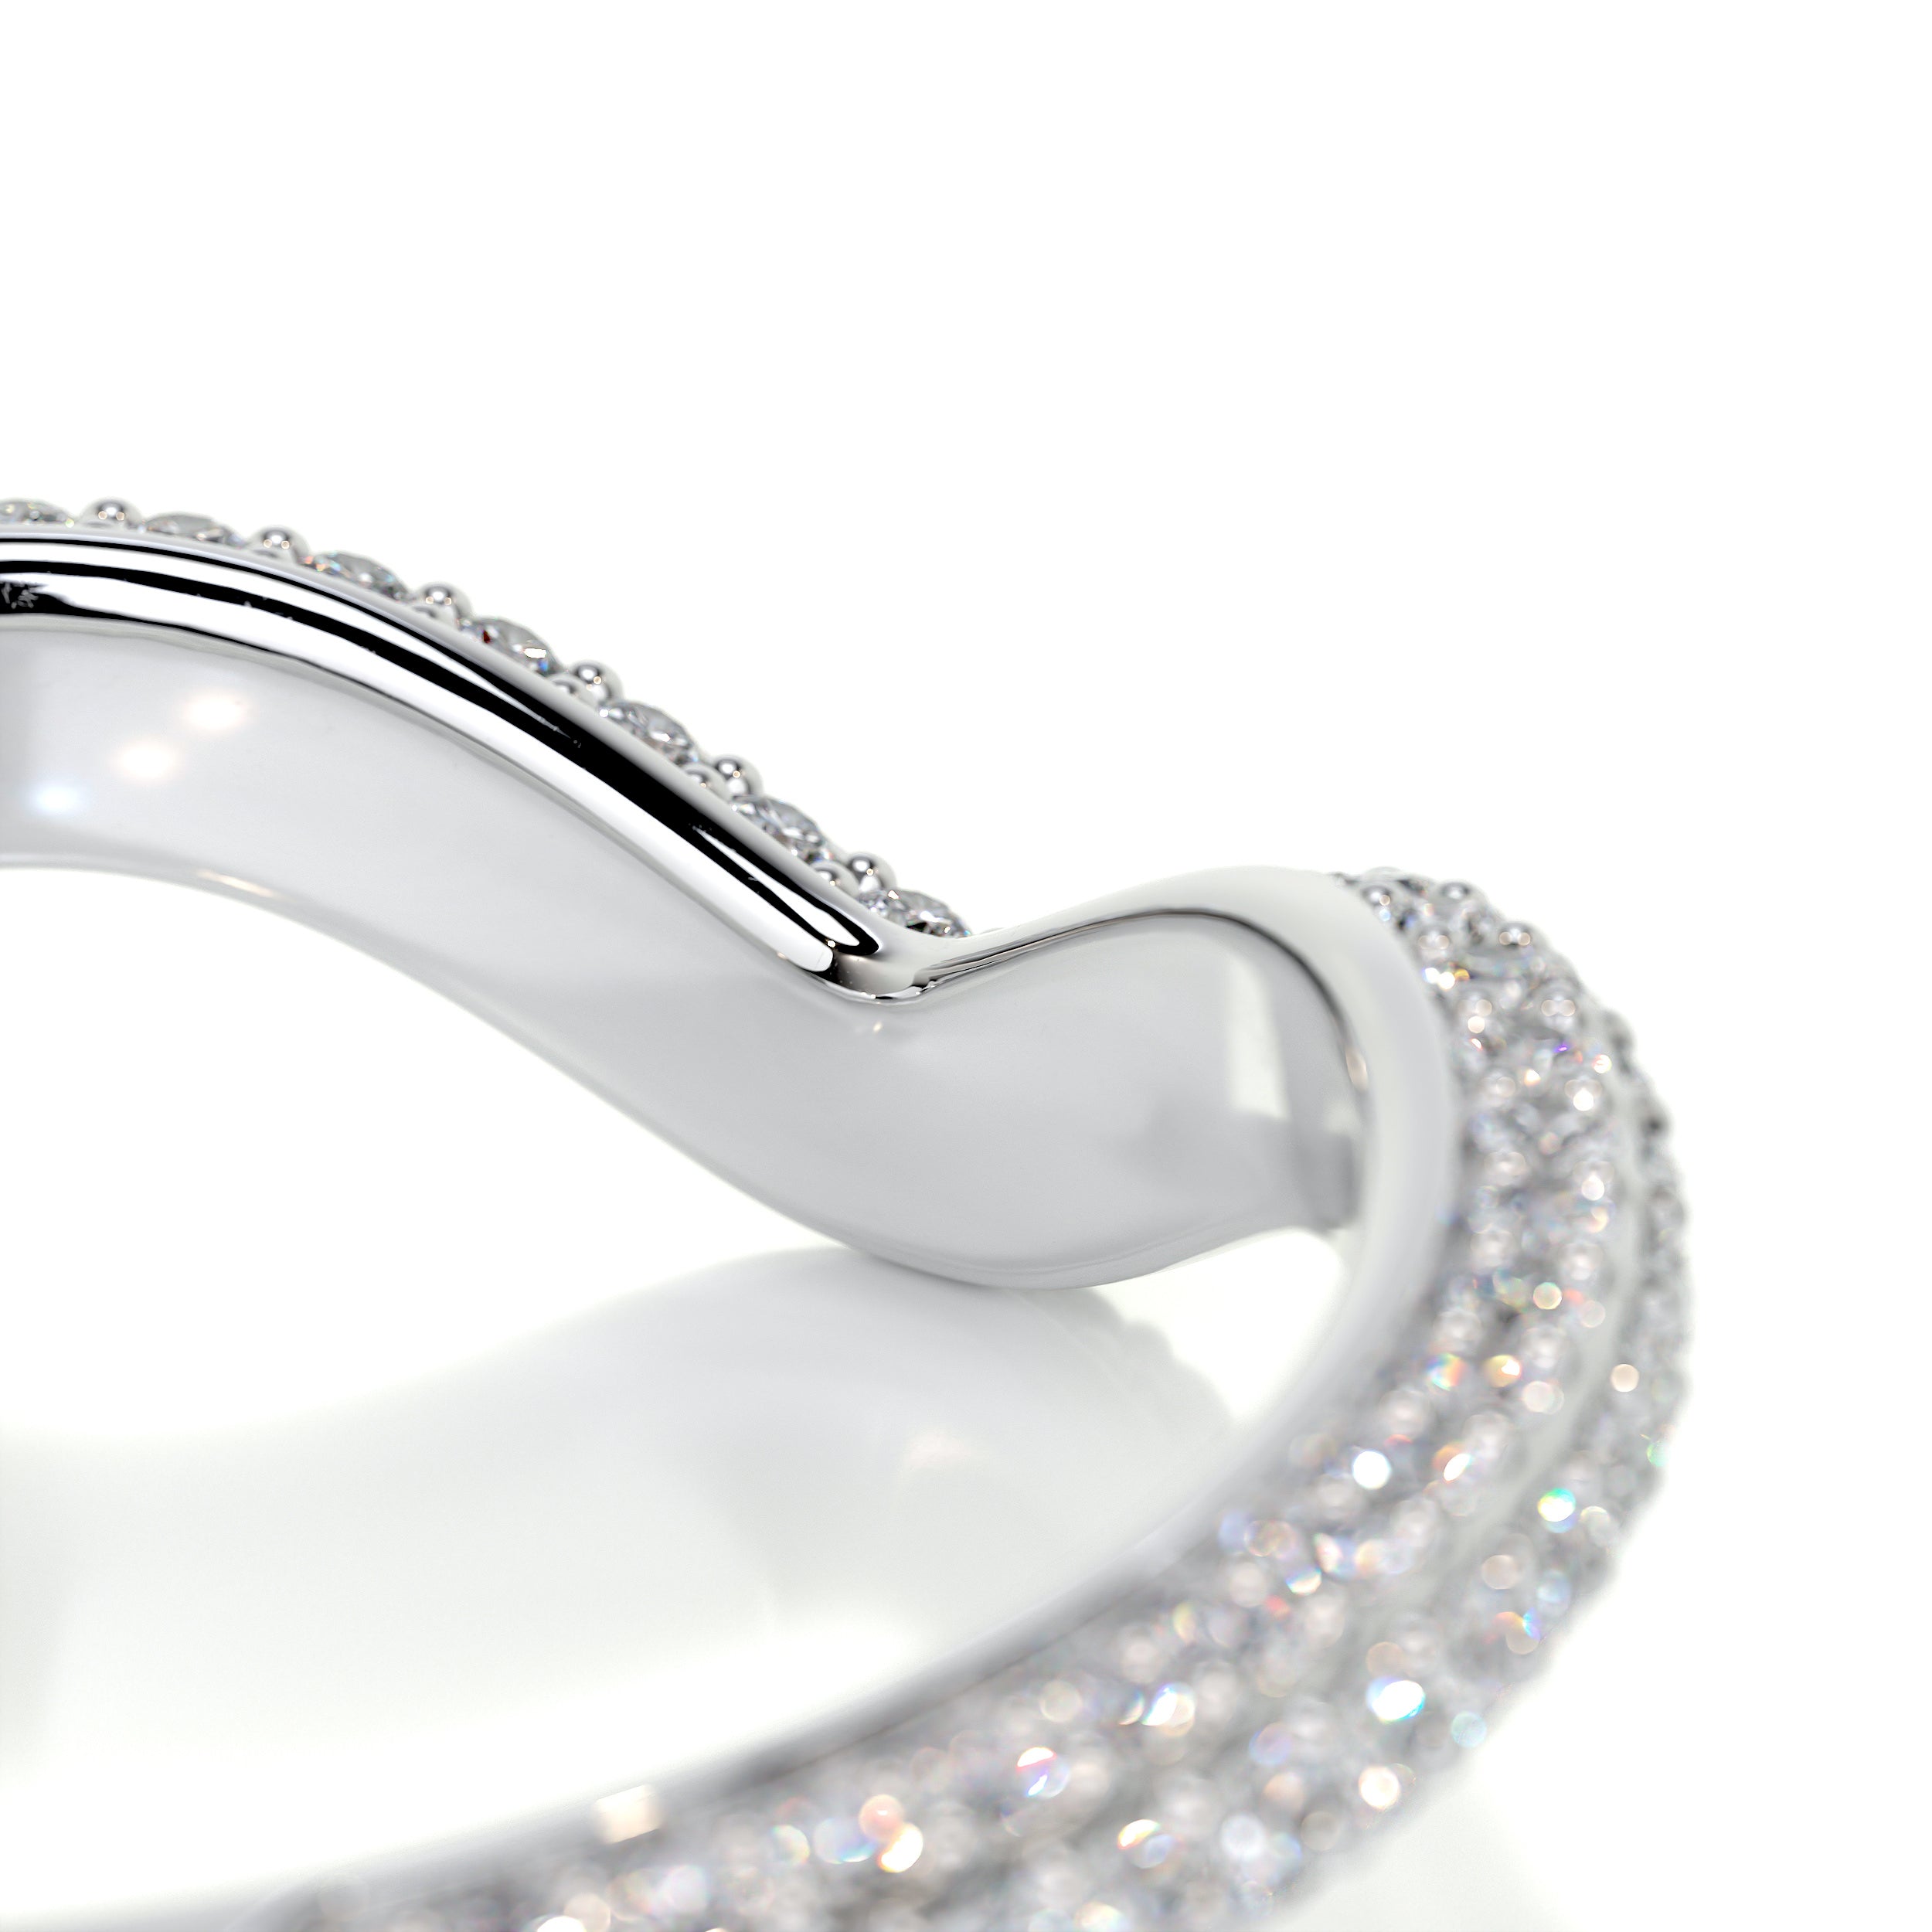 Anastasia Curved Wedding Ring   (0.75 Carat) -18K White Gold